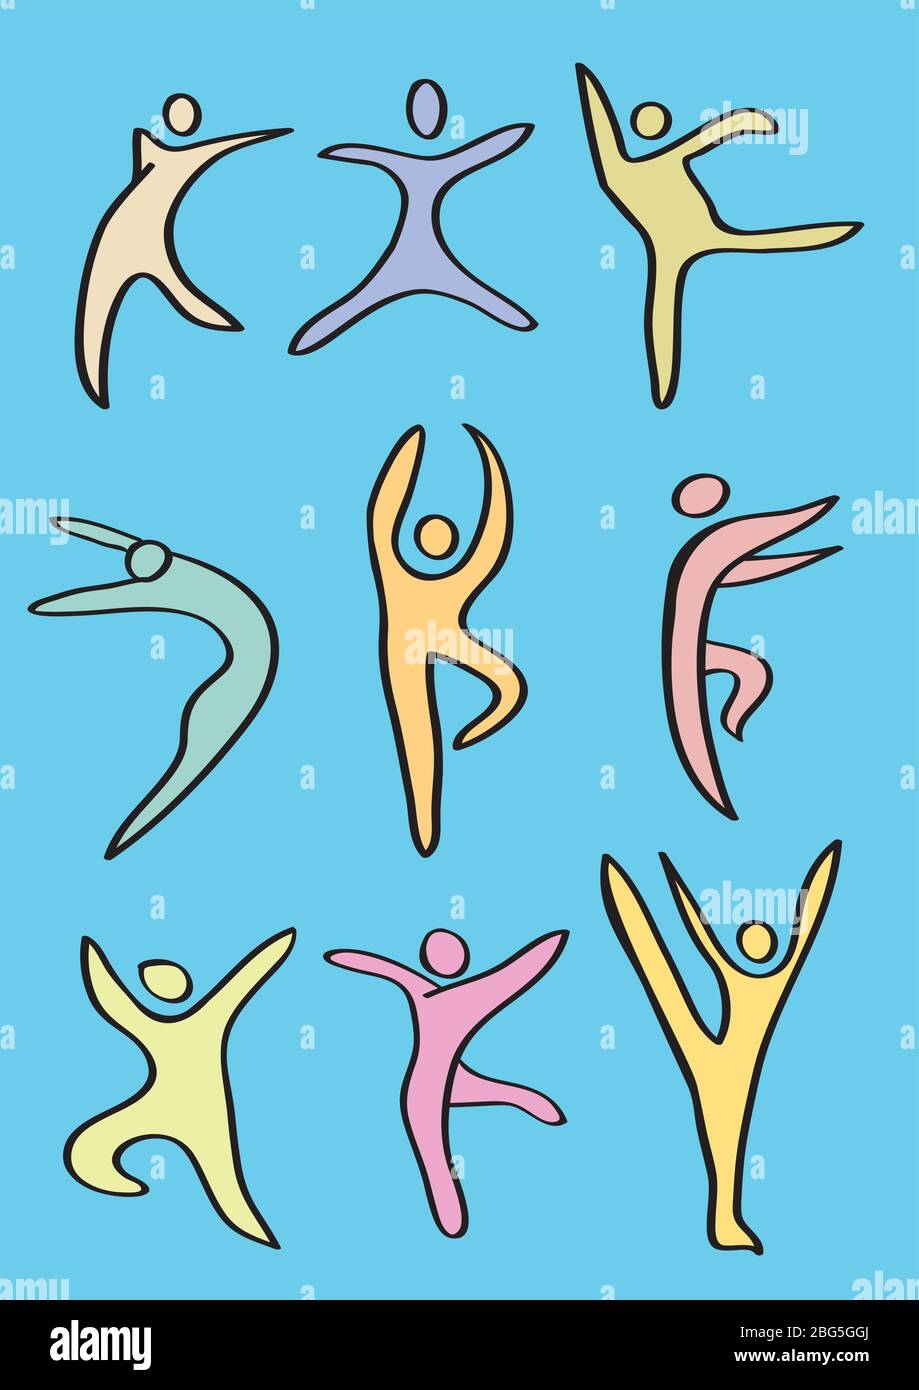 Illustration vectorielle de l'icône stylisée de danseurs faisant des mouvements de danse contemporains. Icône colorée isolée sur fond bleu Illustration de Vecteur